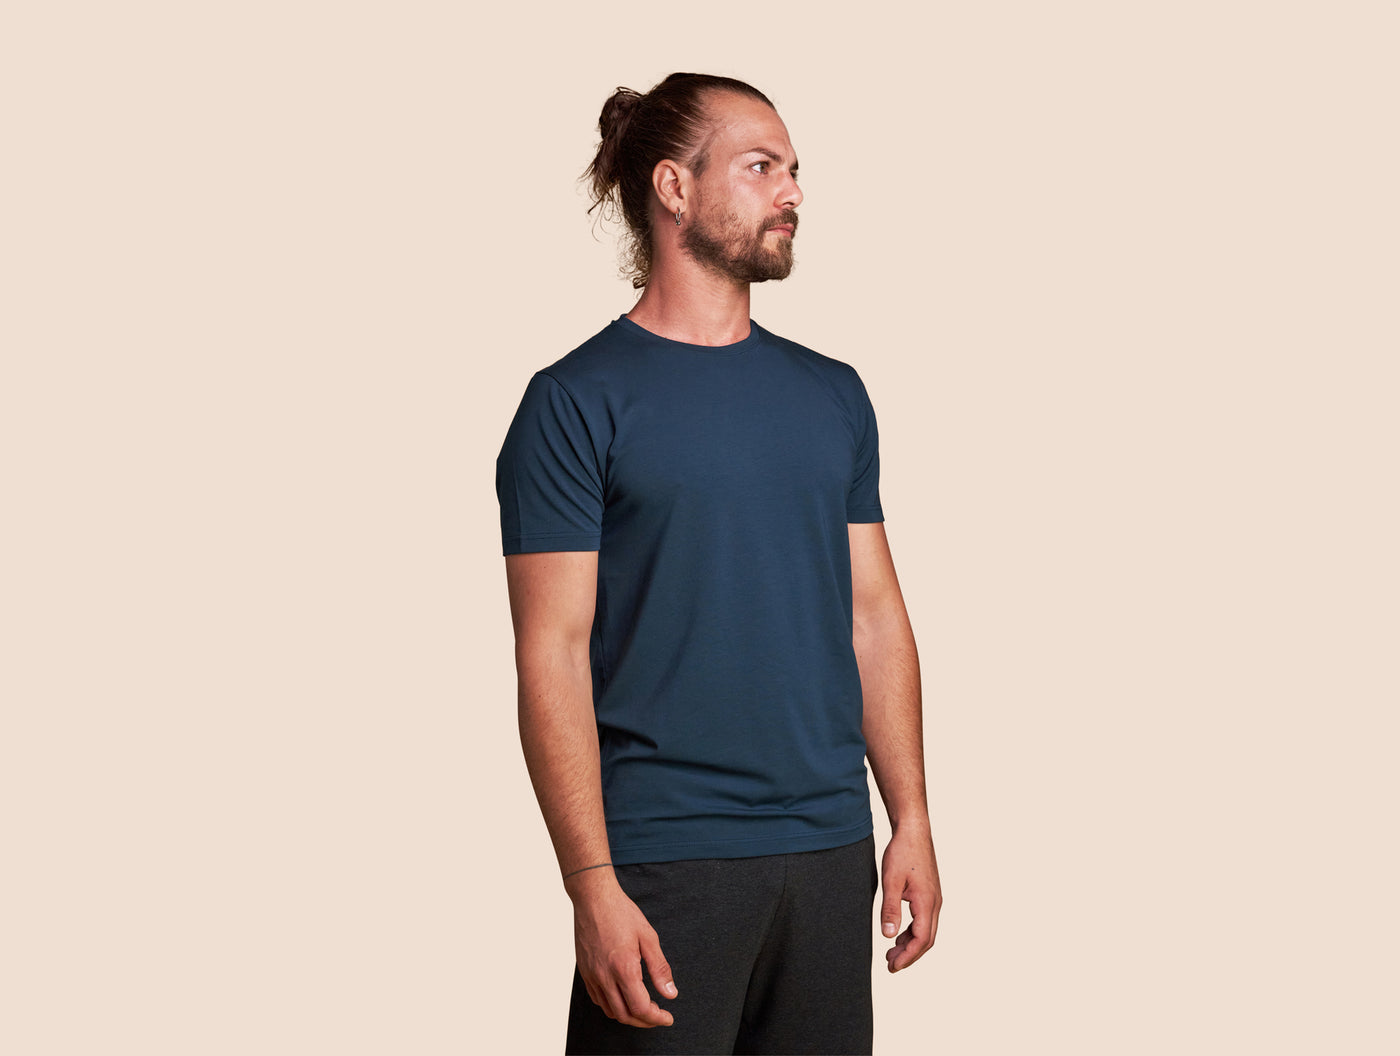 Pétrone T-shirt manches courtes coton pima micromodal bleu pétrole homme#couleur_bl